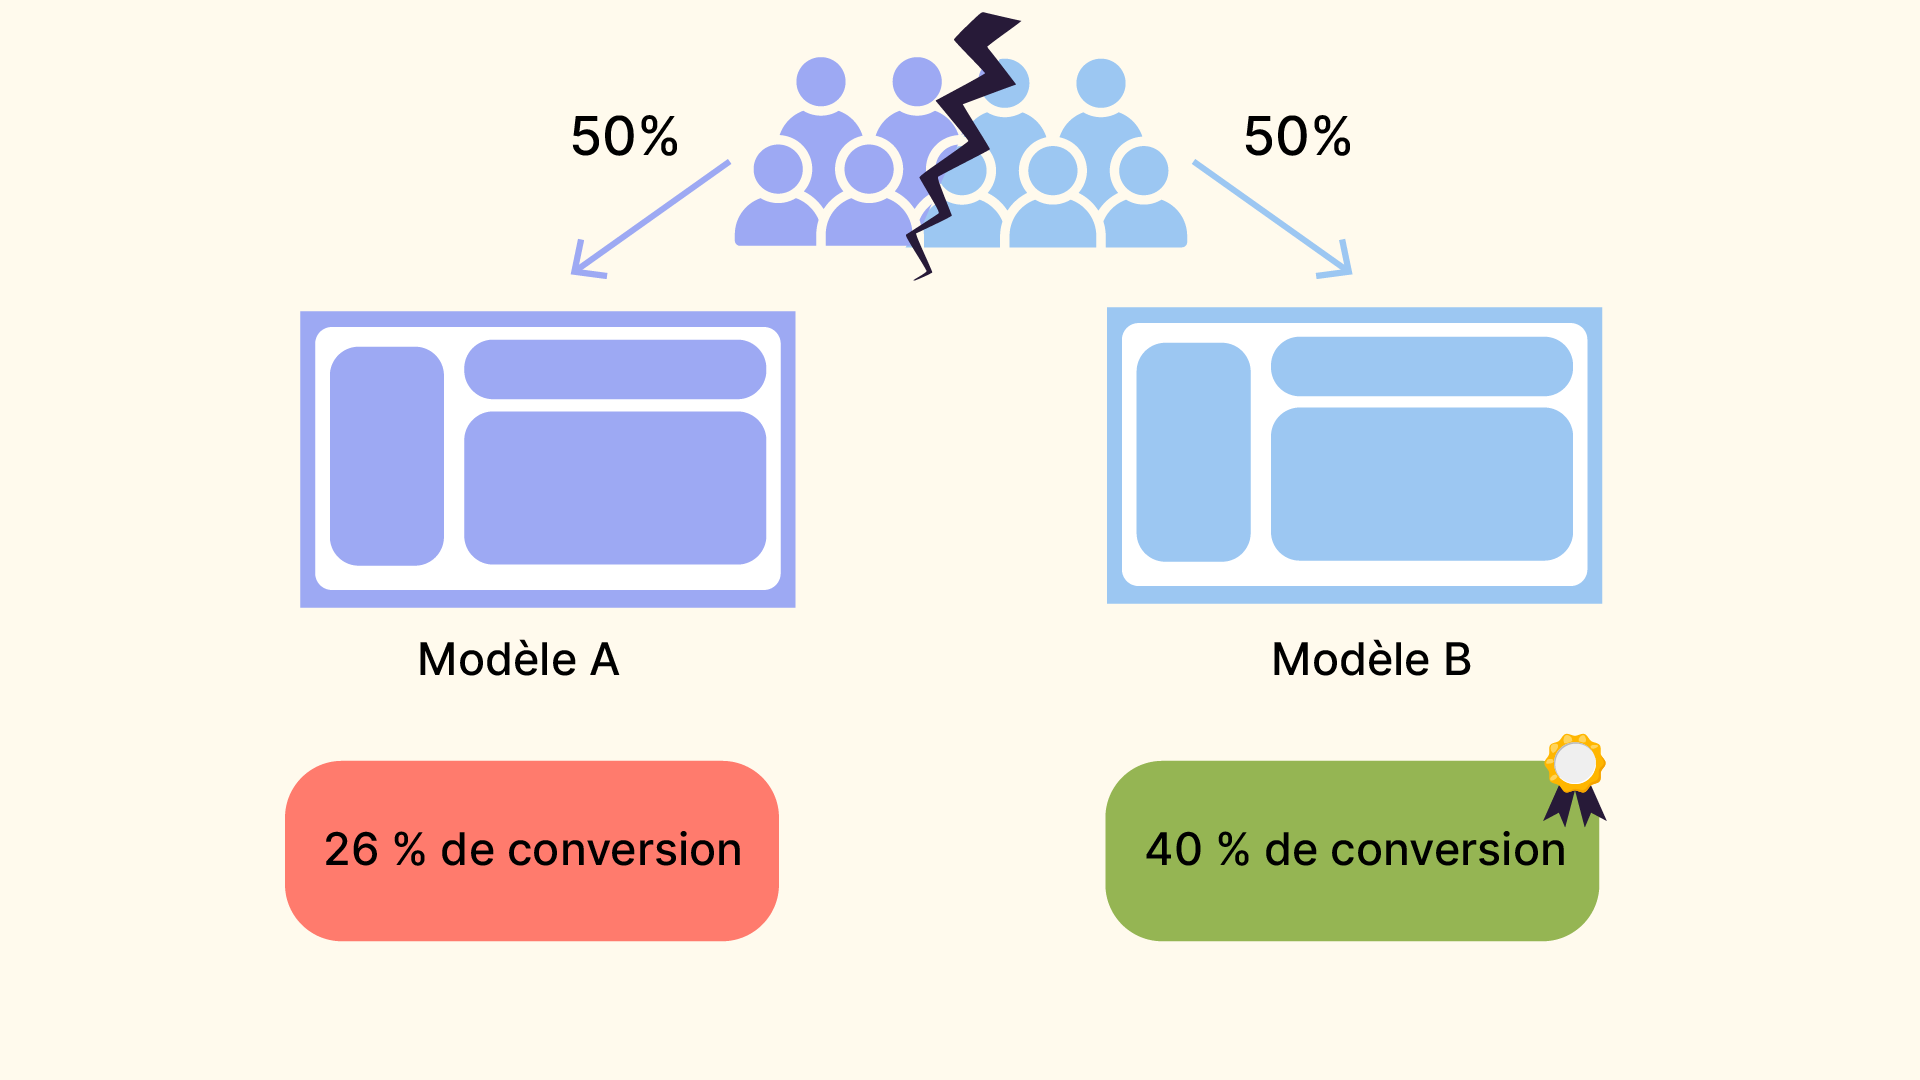 2 groupes d'utilisateurs distincts ont accès à deux versions distinctes de la modification. Cela permet de valider quel modèle a le meilleur taux de conversion.